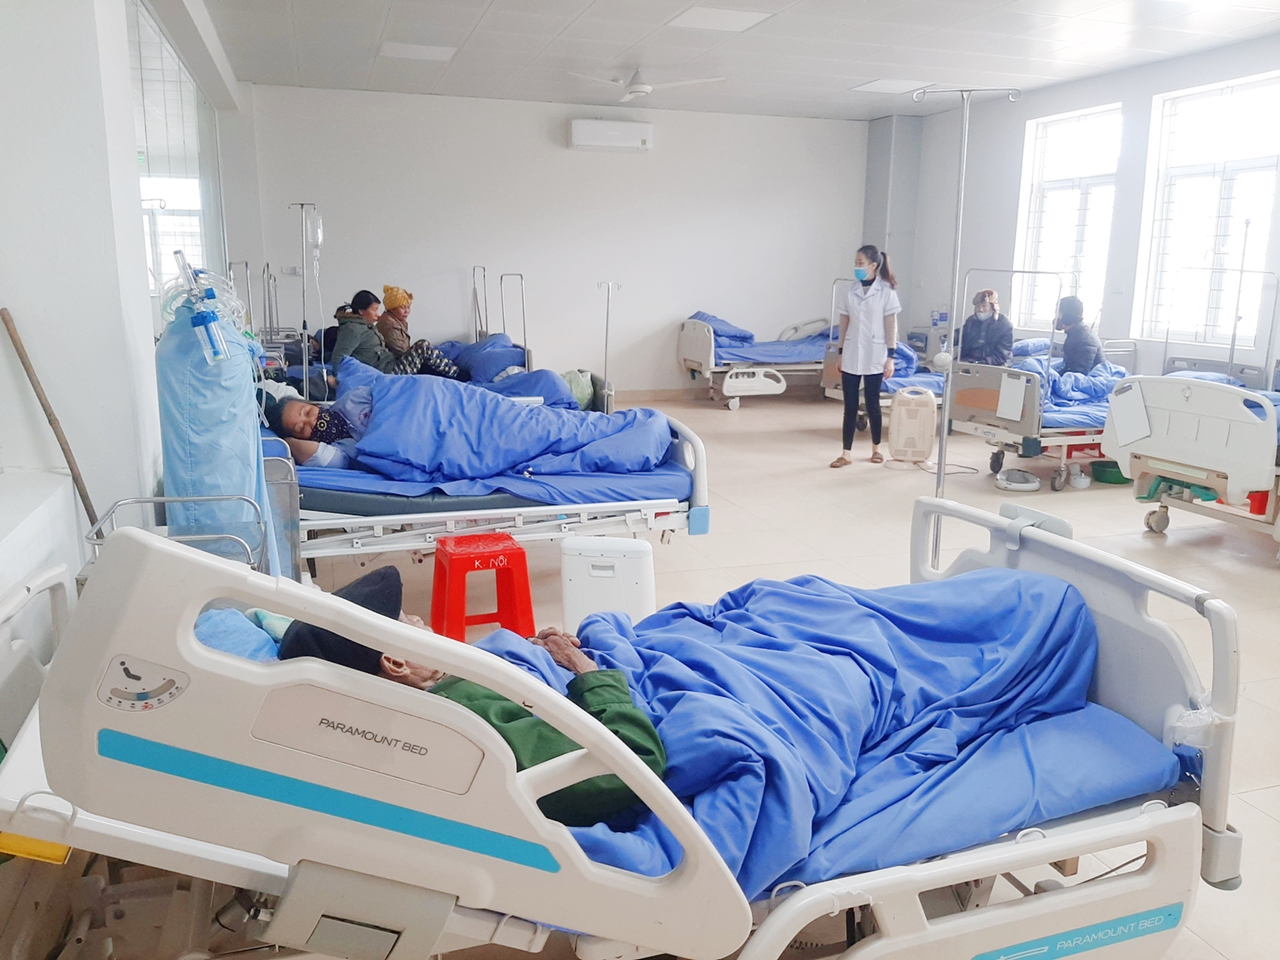 TYTT huyện Ba Chẽ bố trí đầy đủ chăn ấm cho người bệnh đang điều trị